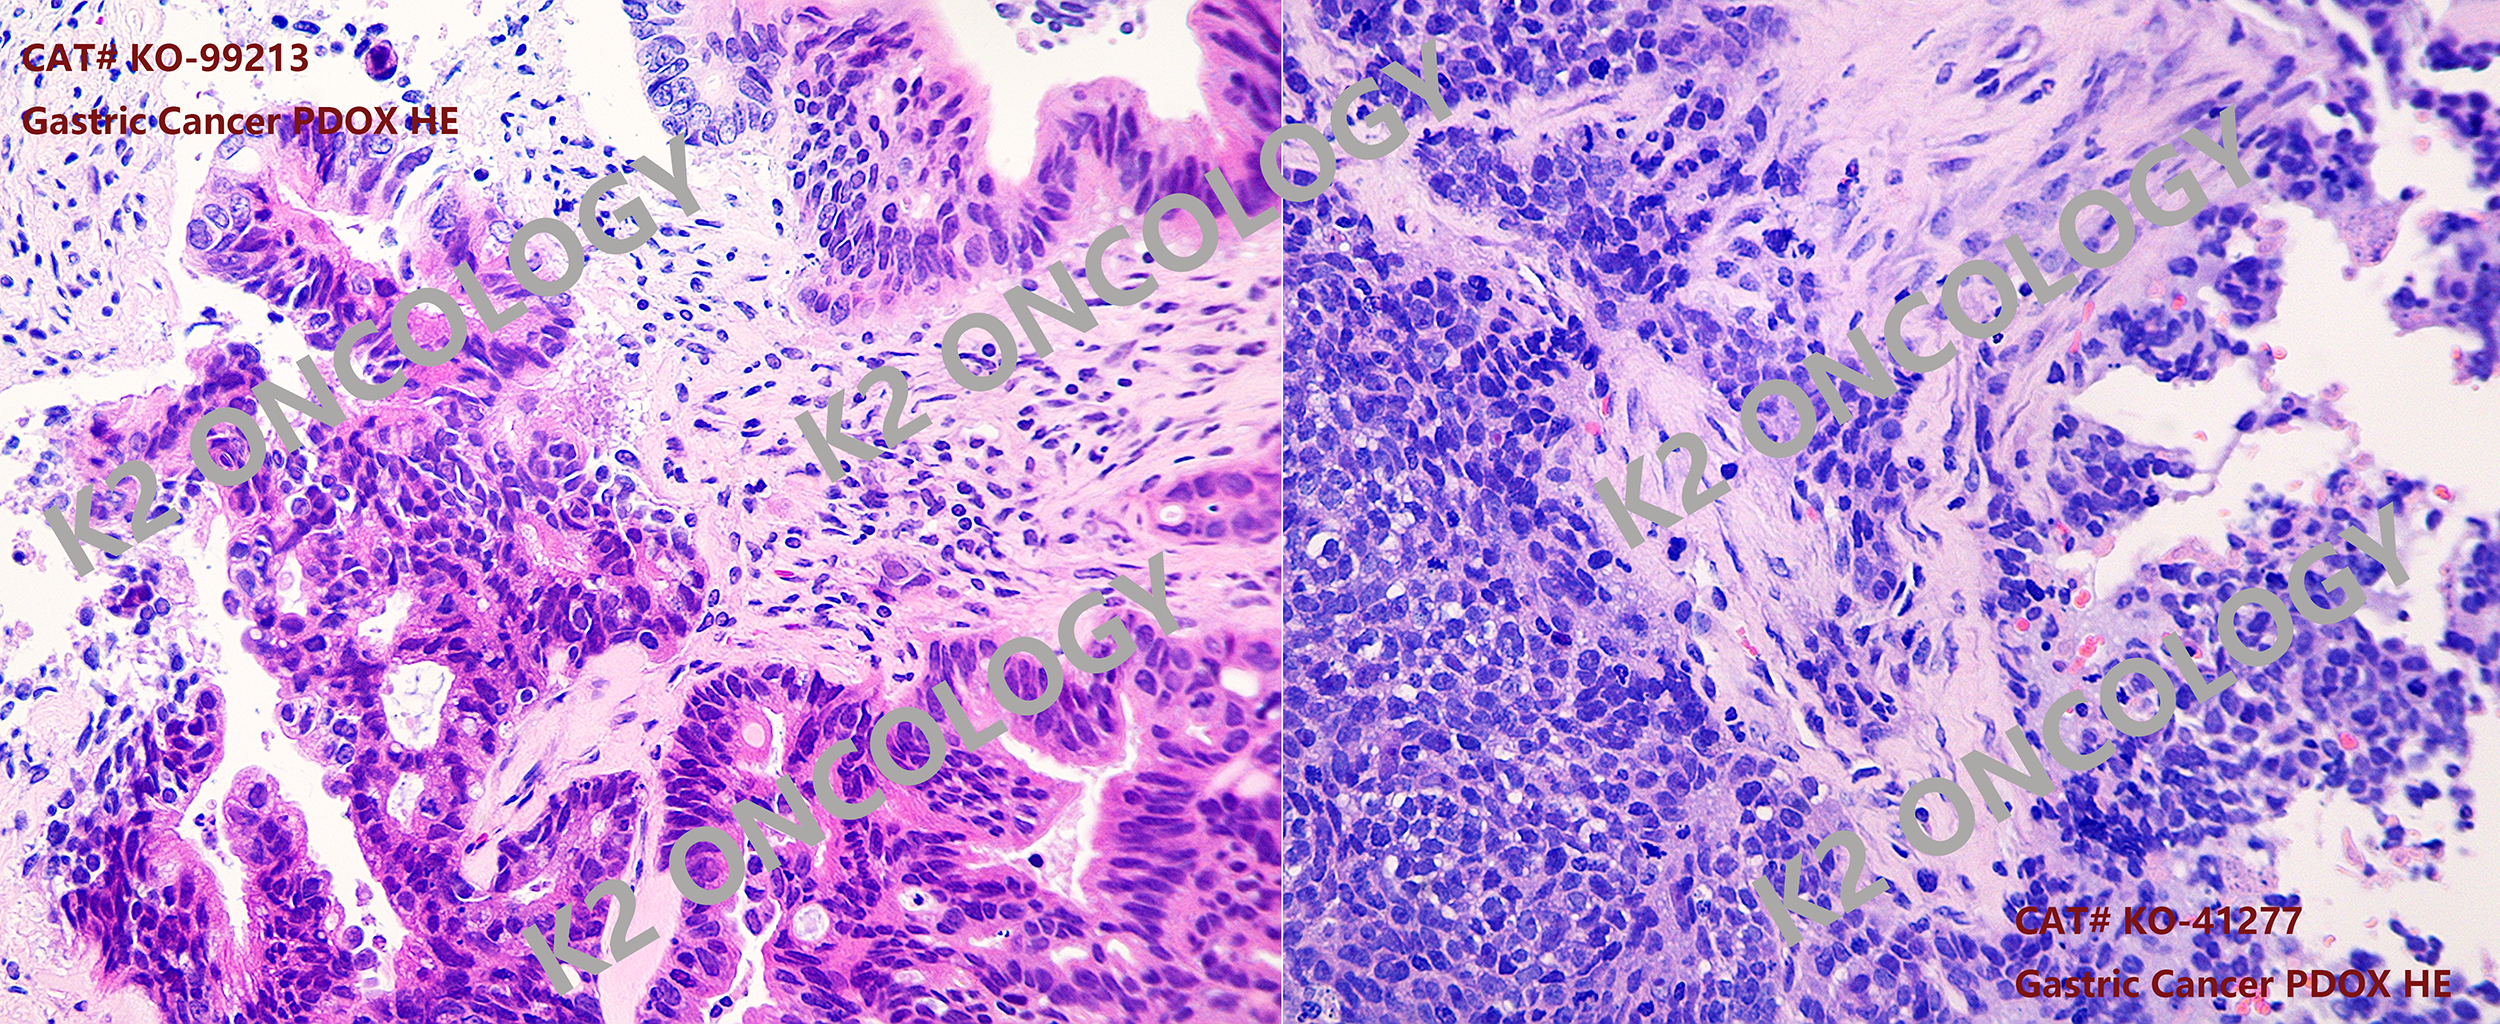 胃癌类器官PDOX小鼠模型（KO-99213和KO41277）的典型HE染色照片